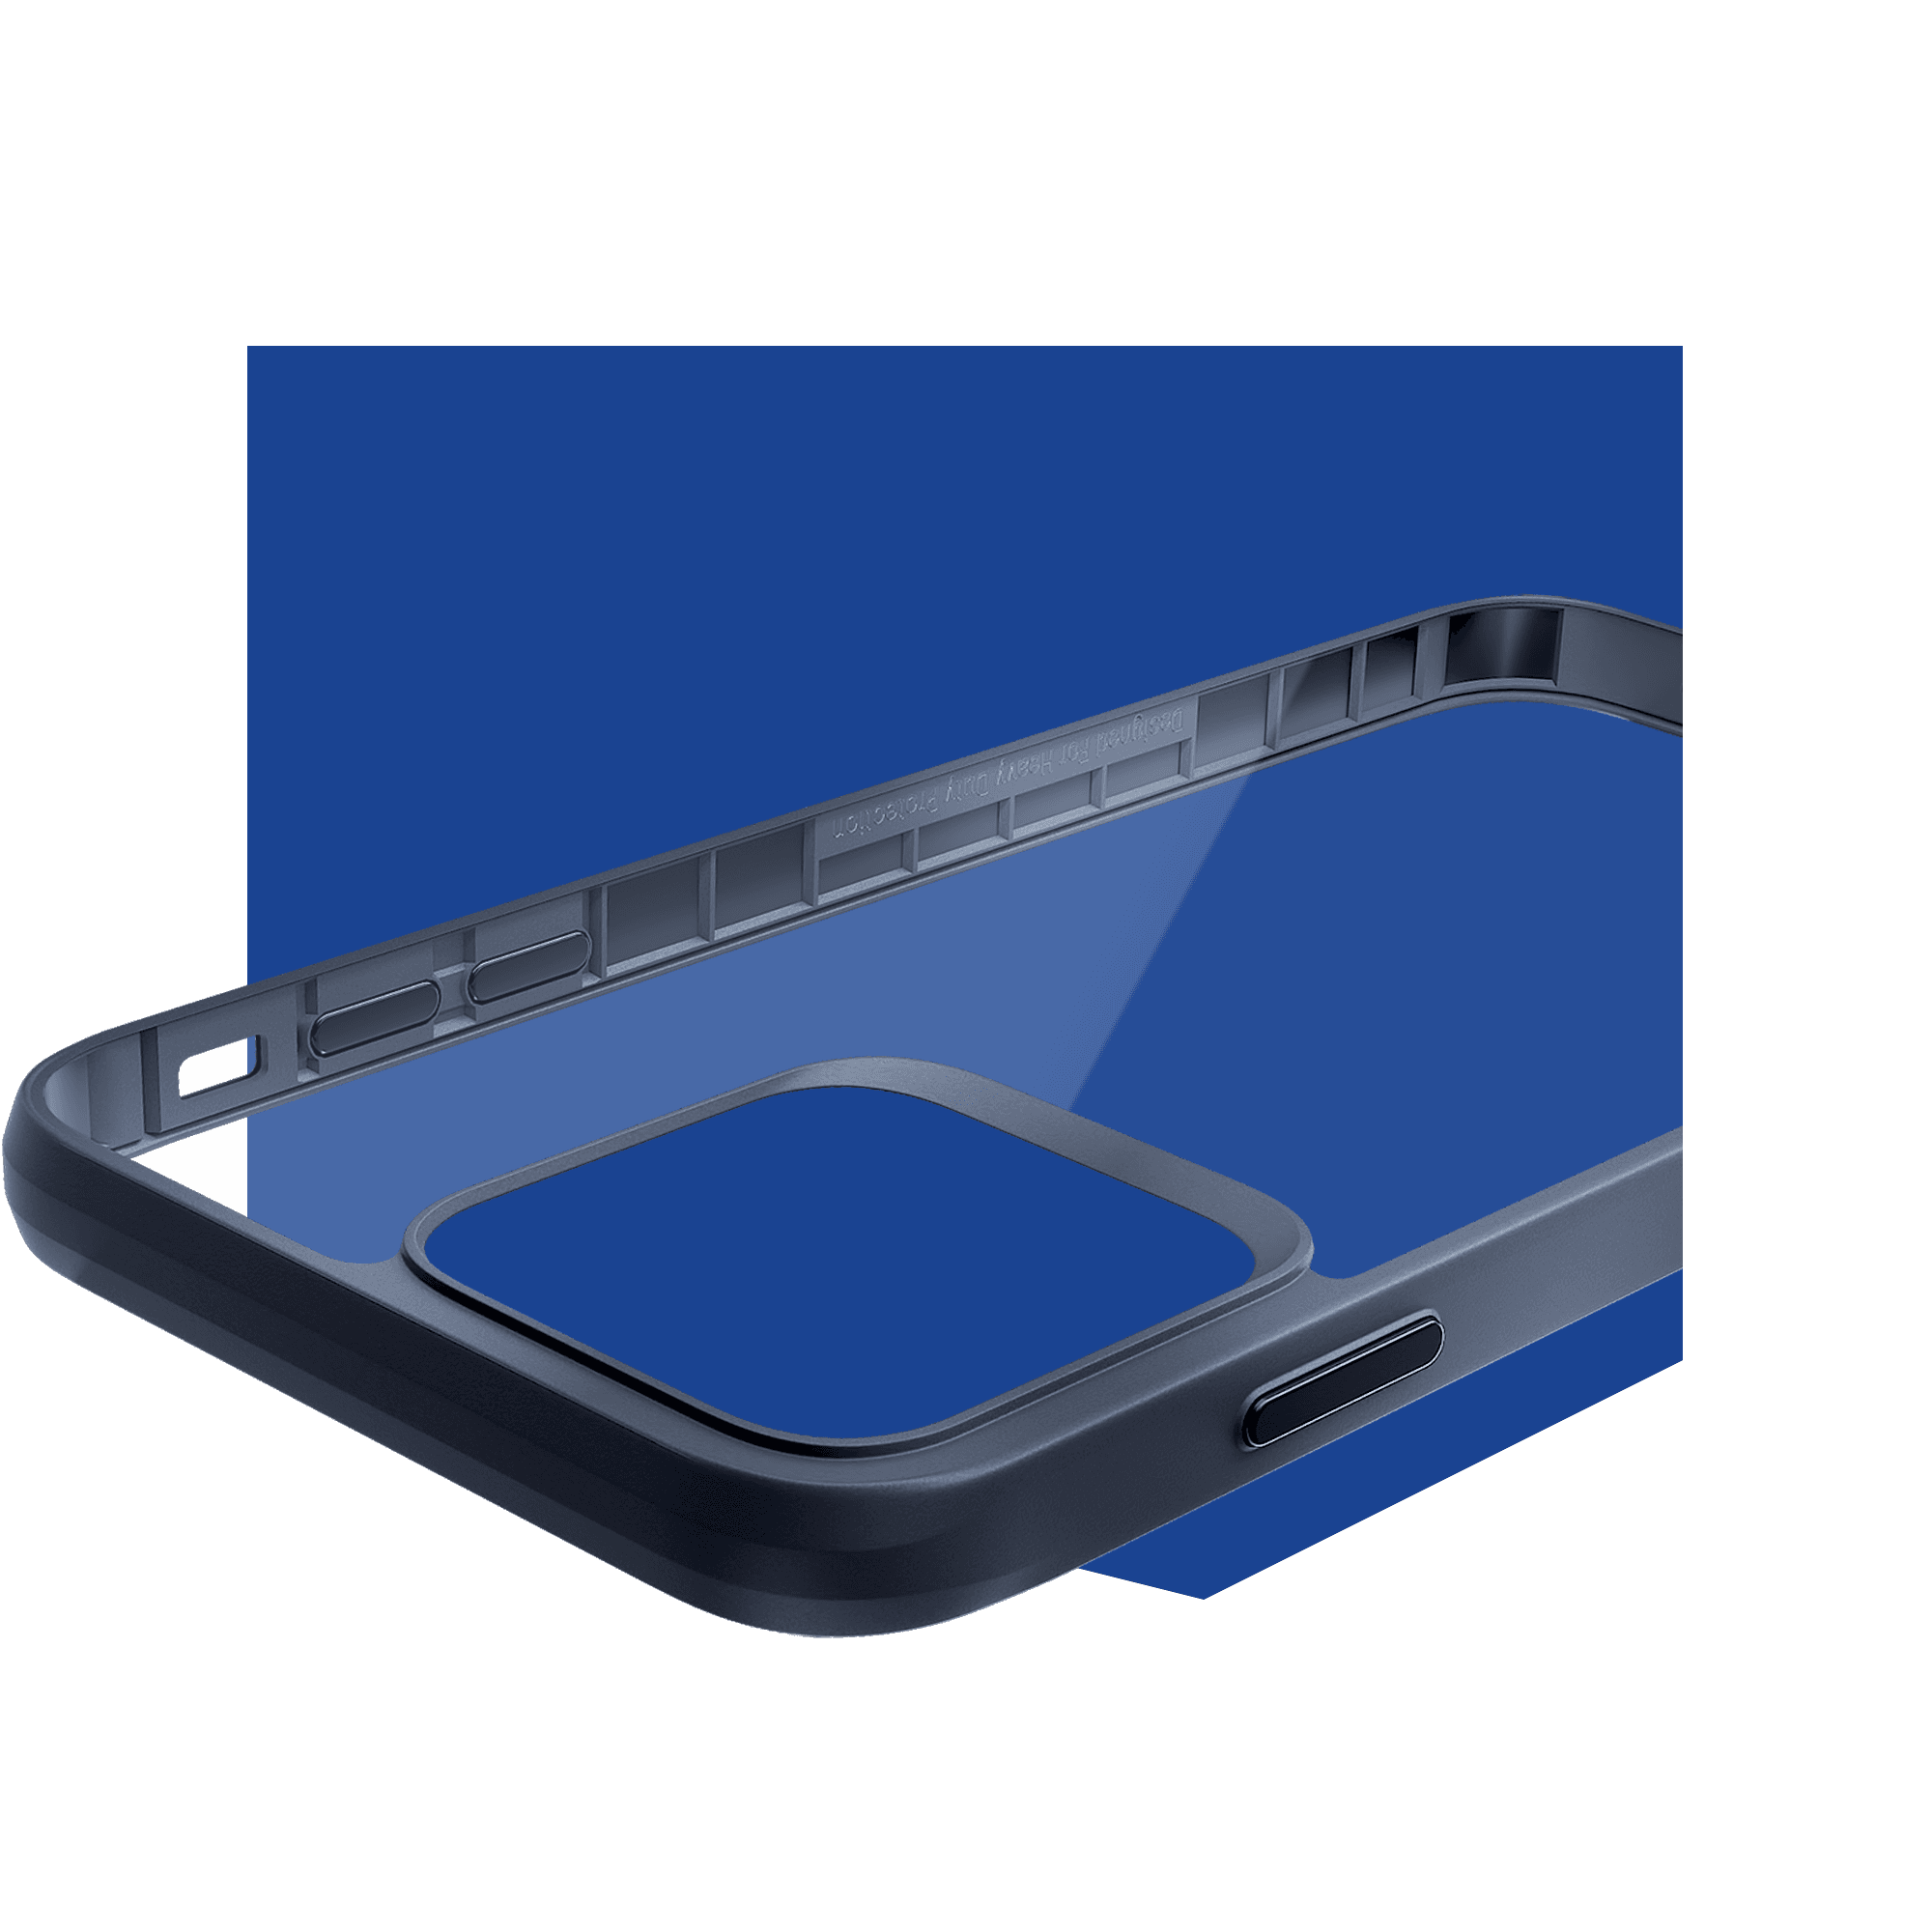 Nakładka Etui 3mk Satin Armor Case+ (czarna ramka) - iPhone X / Xs